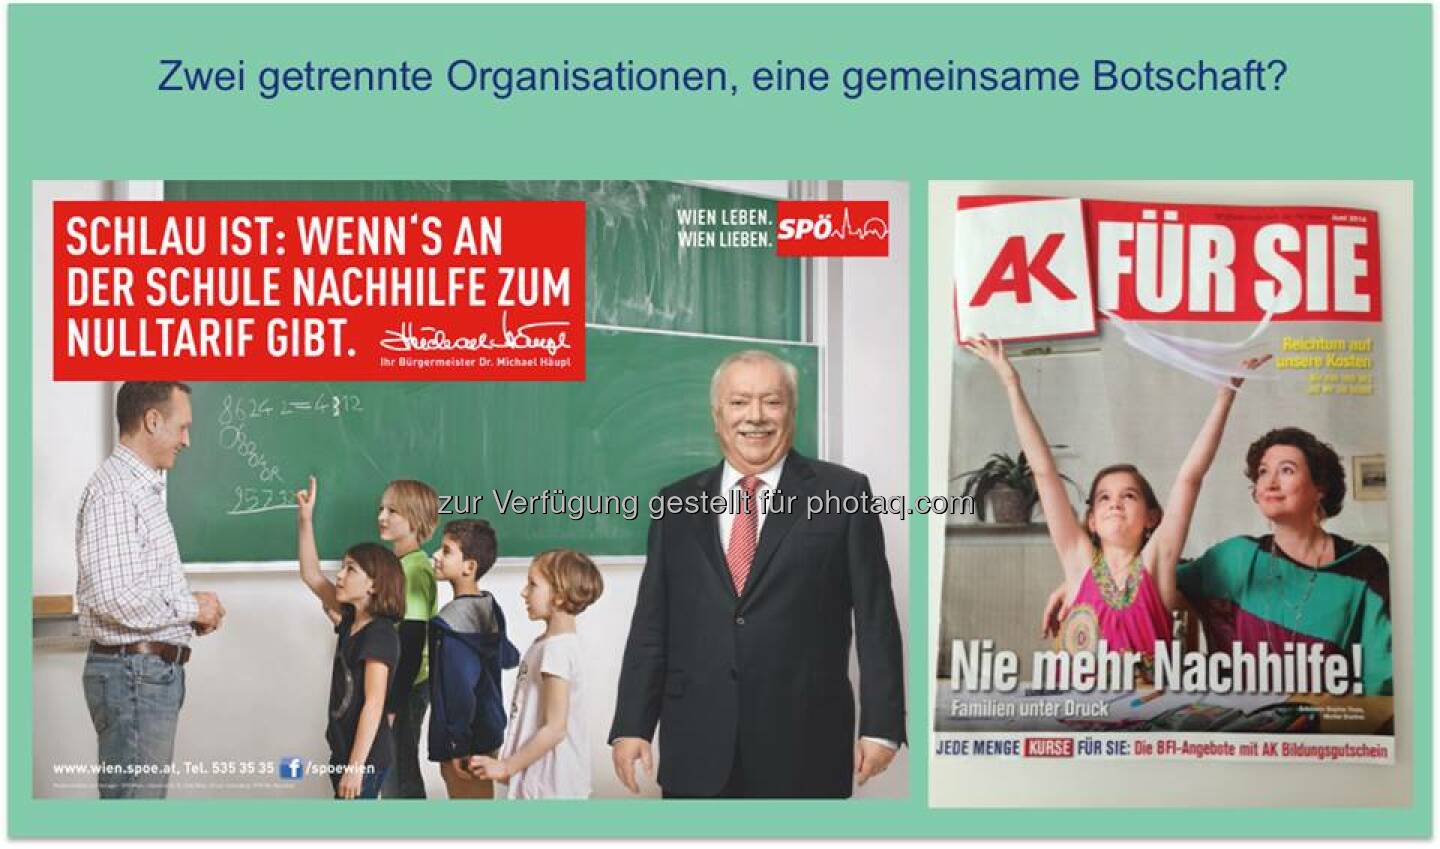 SPÖ AK : Zwei getrennte Organisationen, eine gemeinsame Botschaft?  Source: http://twitter.com/AgendaAustria